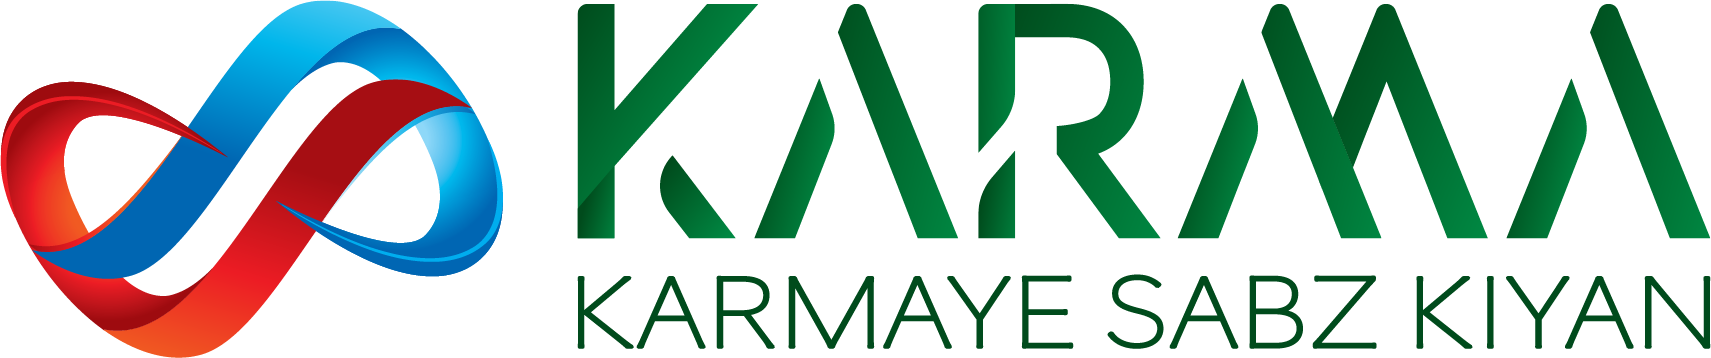 logo_KARMA